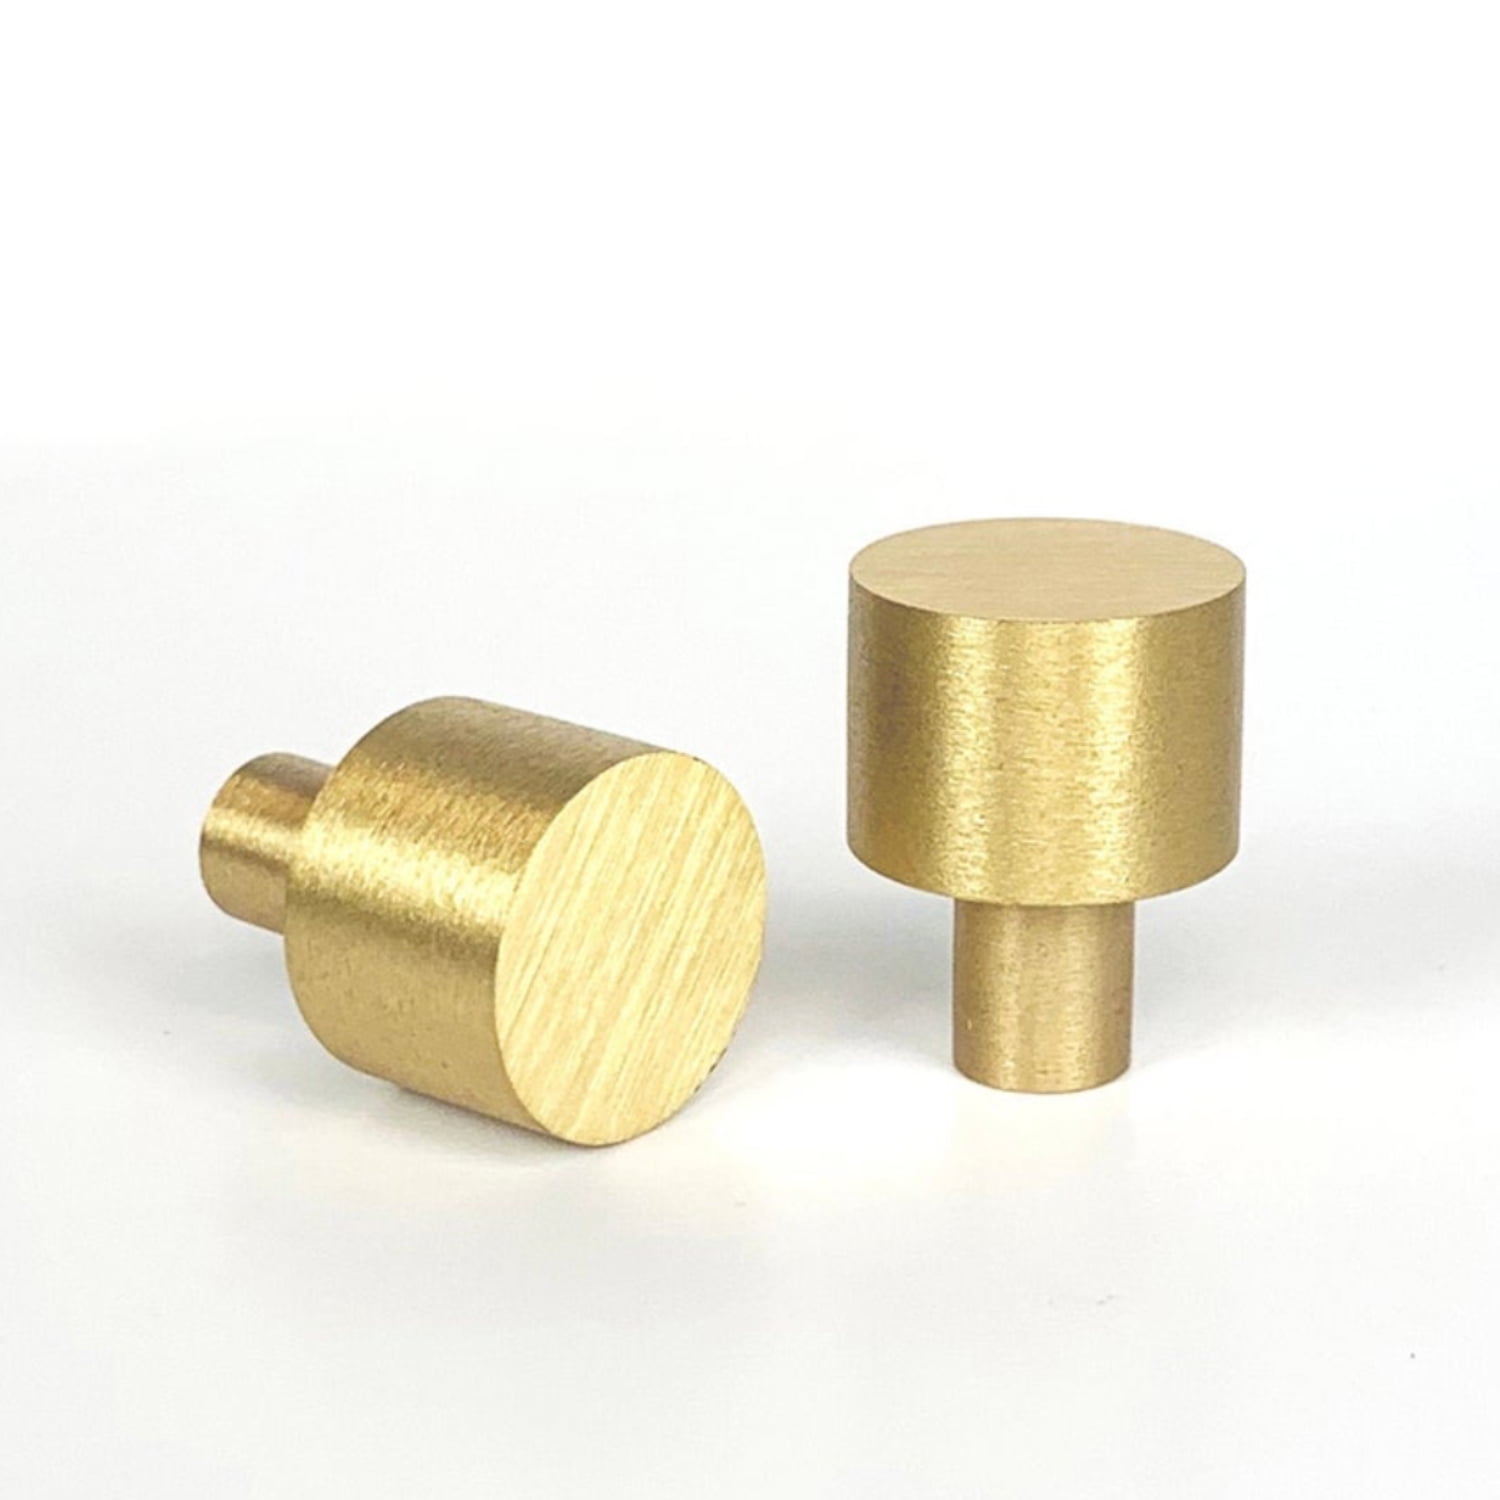 Handle & Screw 20mm Diameter 20mm Victorian Design Brass Door Knob 